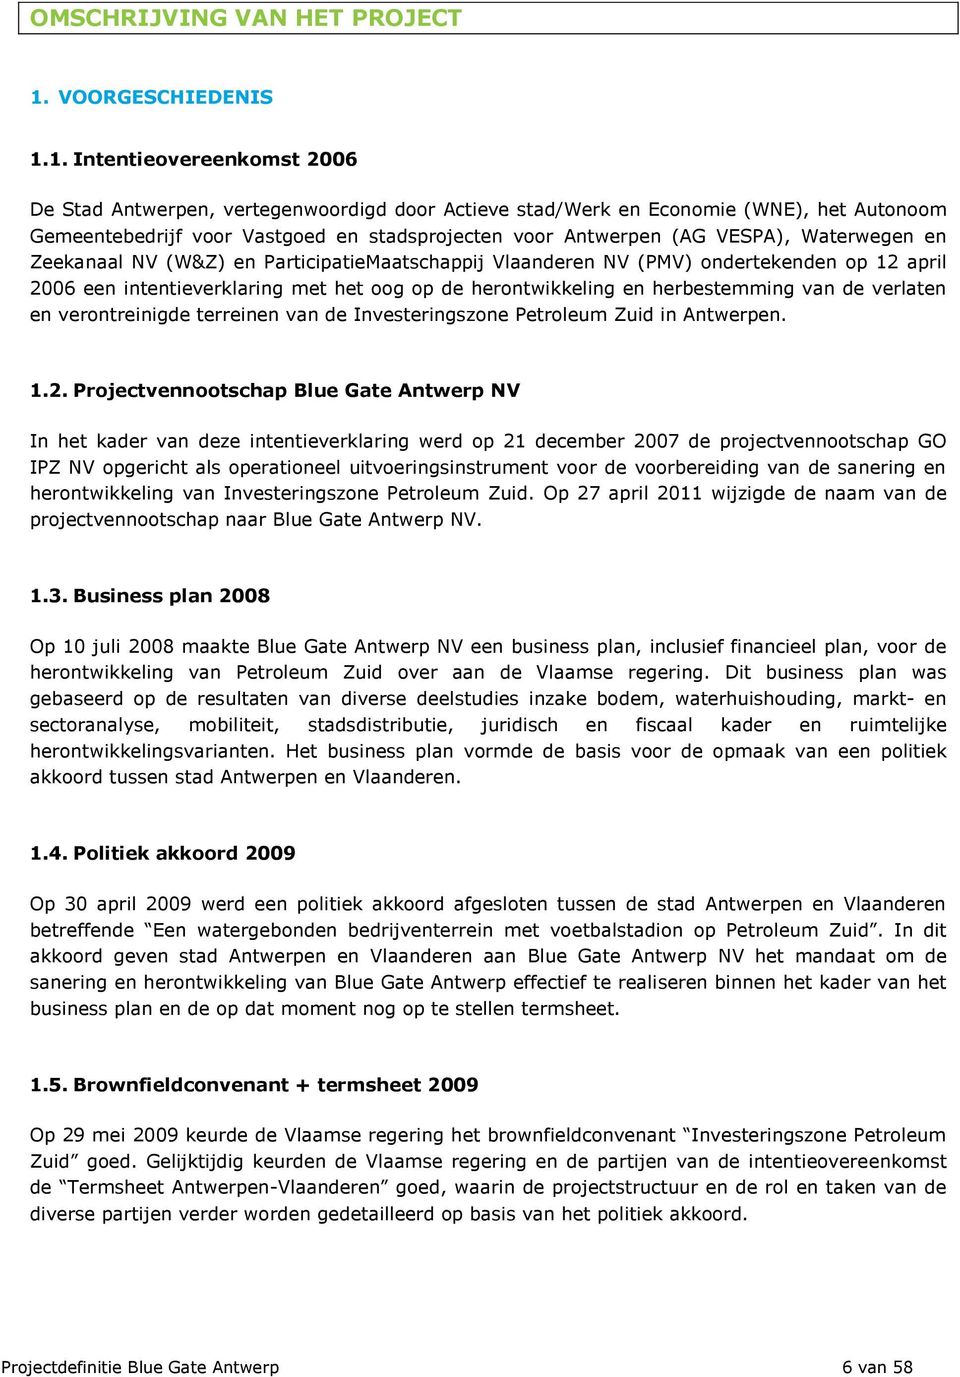 1. Intentievereenkmst 2006 De Stad Antwerpen, vertegenwrdigd dr Actieve stad/werk en Ecnmie (WNE), het Autnm Gemeentebedrijf vr Vastged en stadsprjecten vr Antwerpen (AG VESPA), Waterwegen en